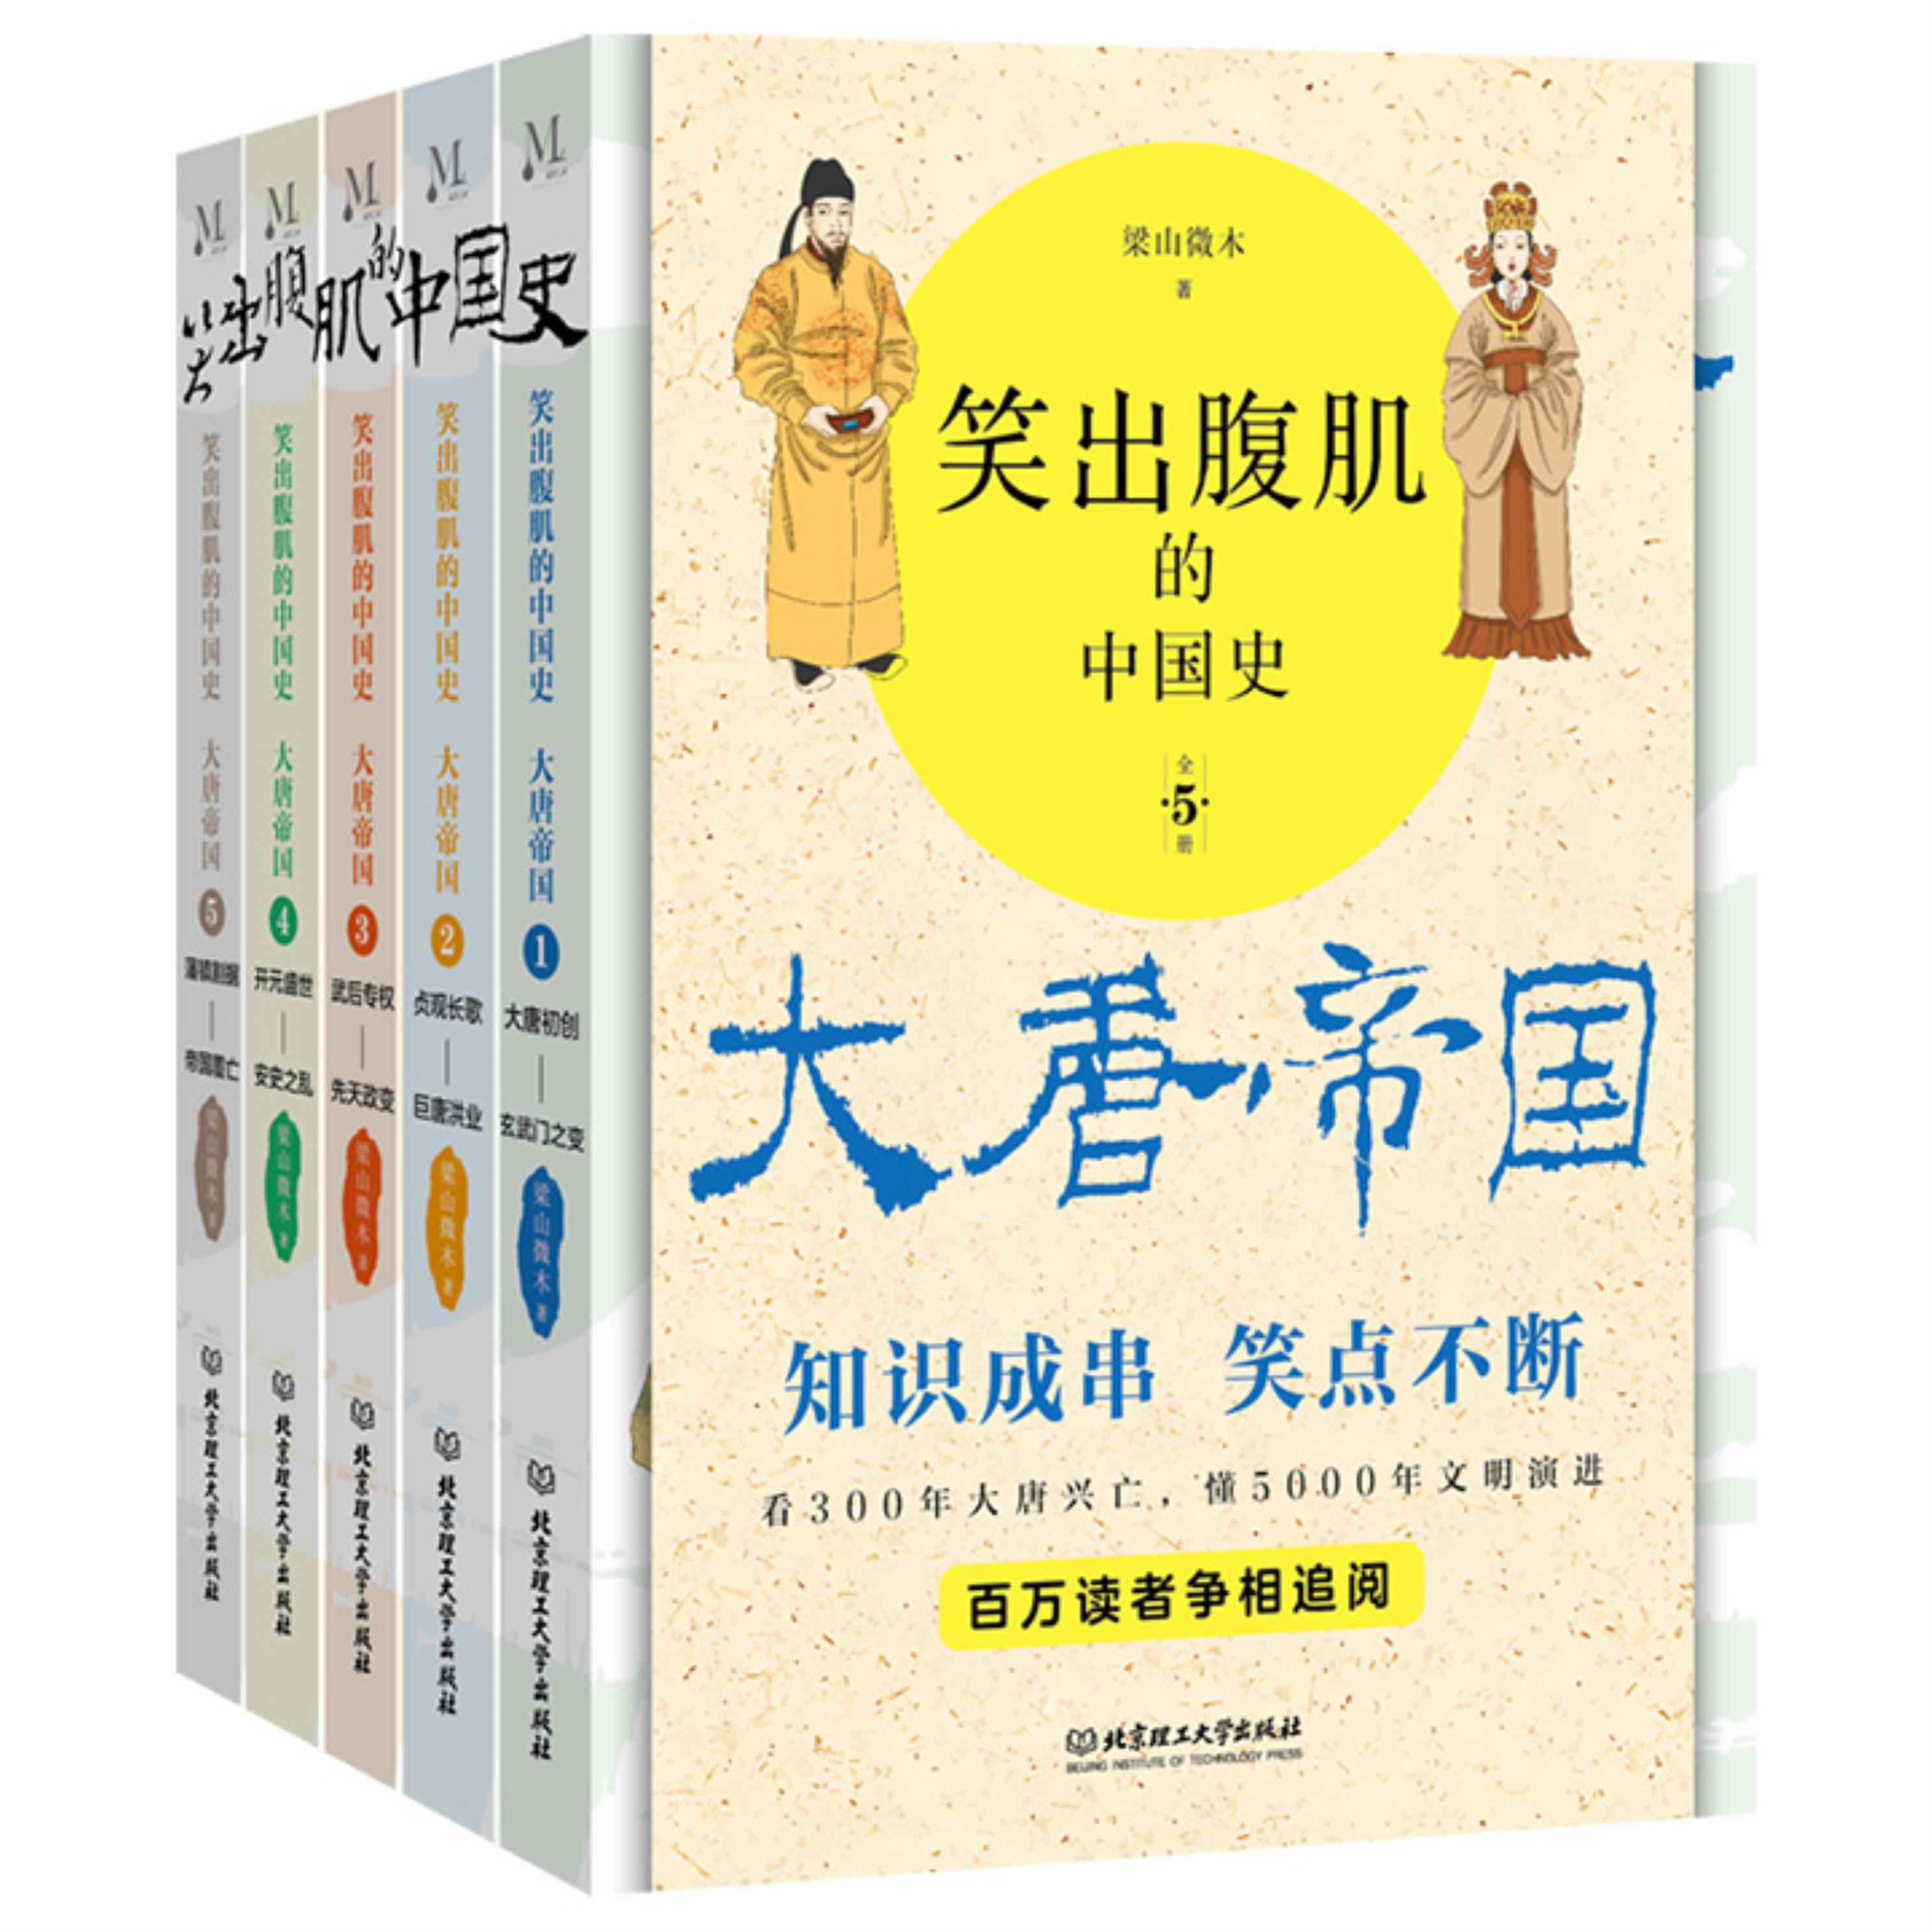 【正版】笑出腹肌的中国史,大唐帝国 : 全5册北京理工大学出版社